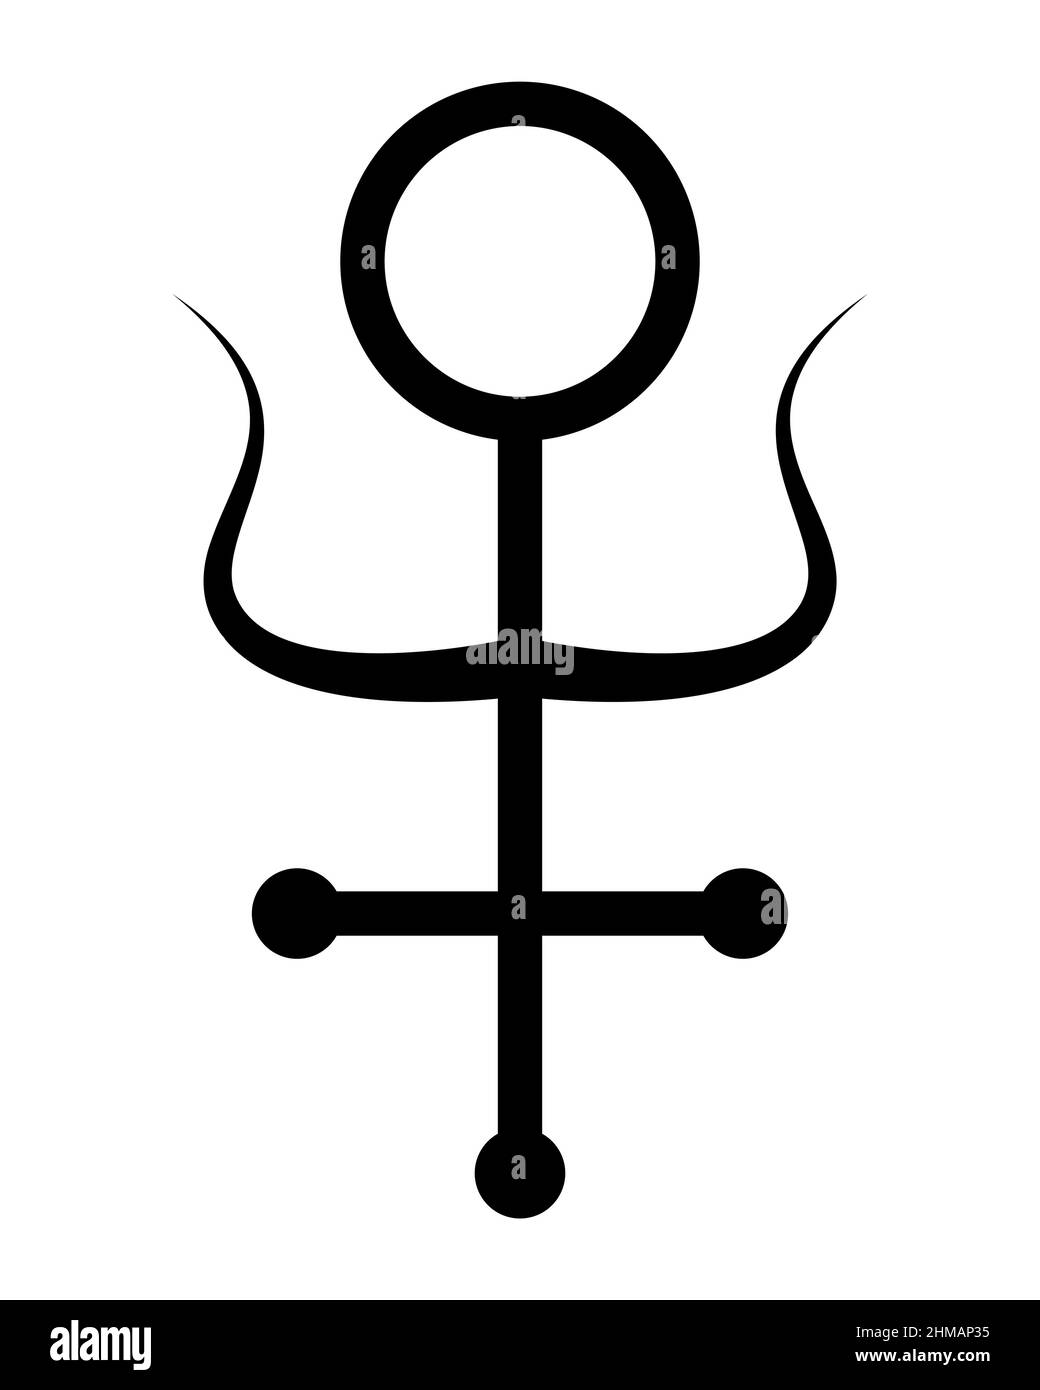 simbolo di antimonio alchimico, segno sacro, antica croce mistica, tatuaggio nero disegnato a mano con pennello, incisione pagana vettore illustrazione isolato Illustrazione Vettoriale